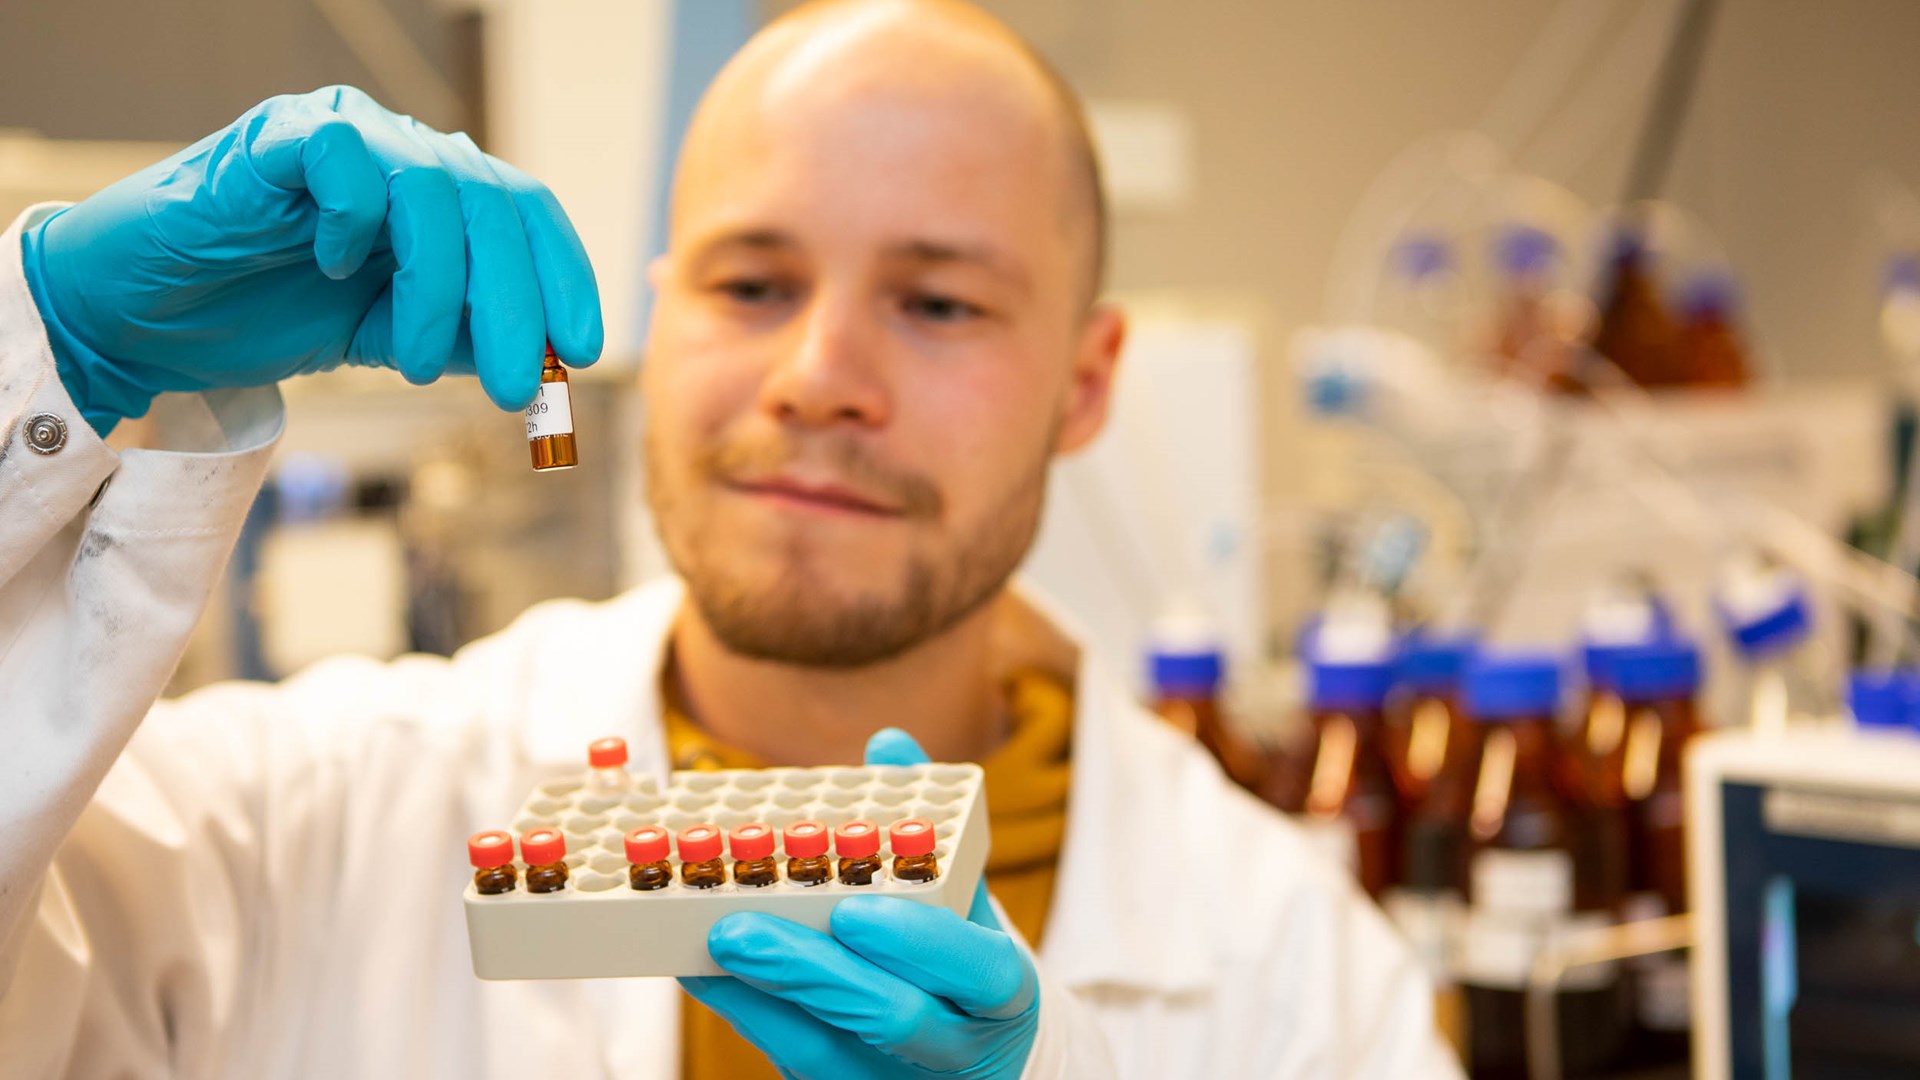 Bild av en person med vit labbrock och blå plasthandskar som håller ett ställ med små provrör i en hand. Med den andra handen lyfter han upp en av de små flaskorna och tittar på den noggrant. I bakgrunden skymtar labbutrustning.